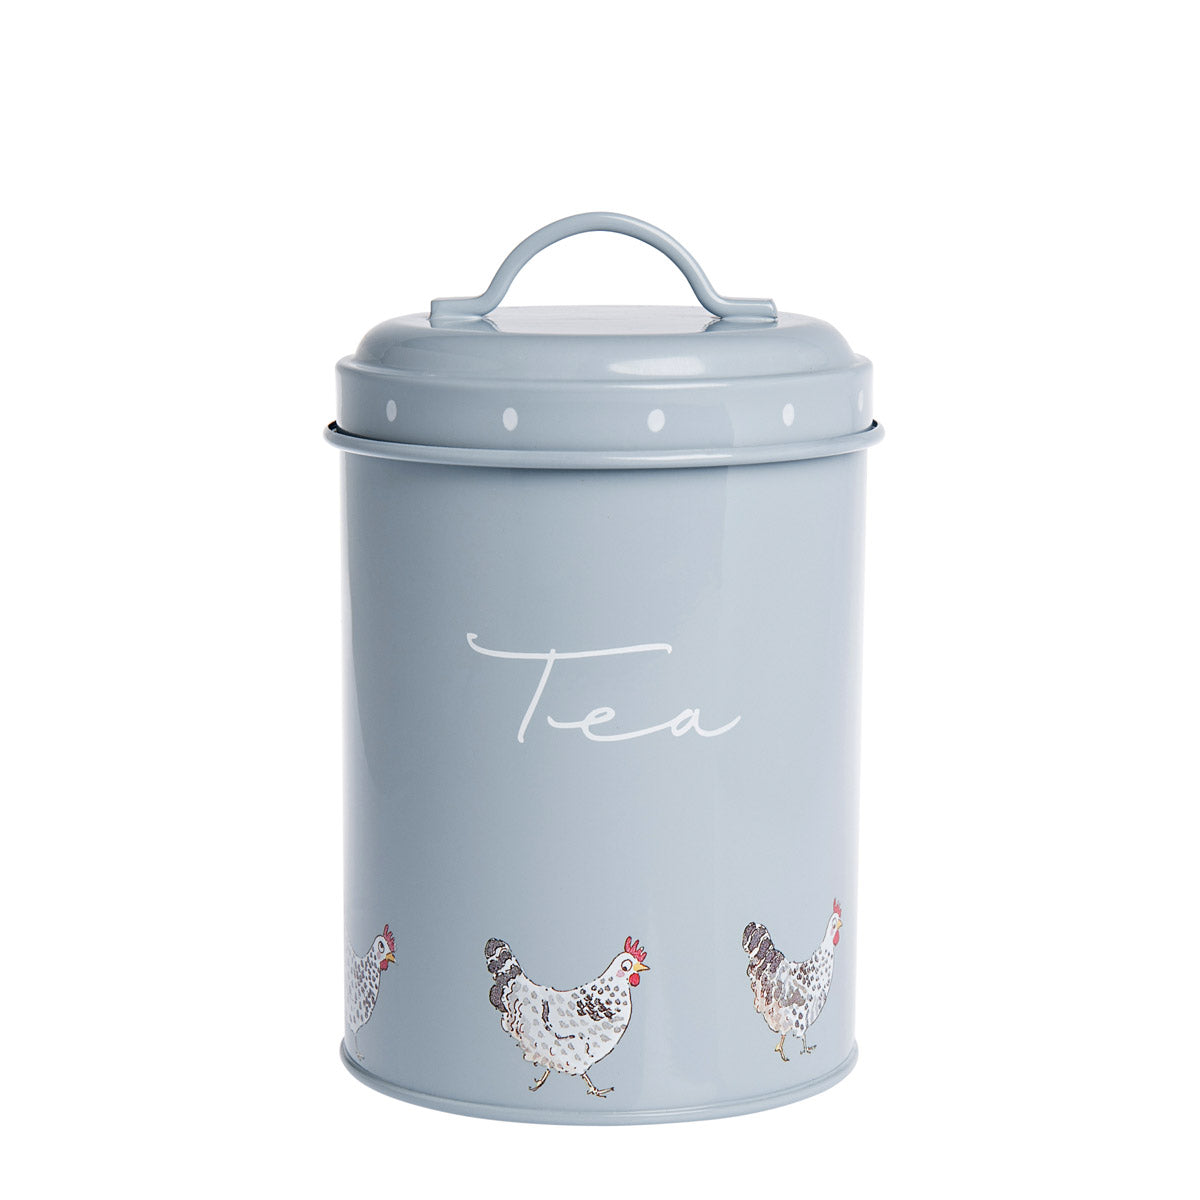 Chicken Storage Tins - Set of 3